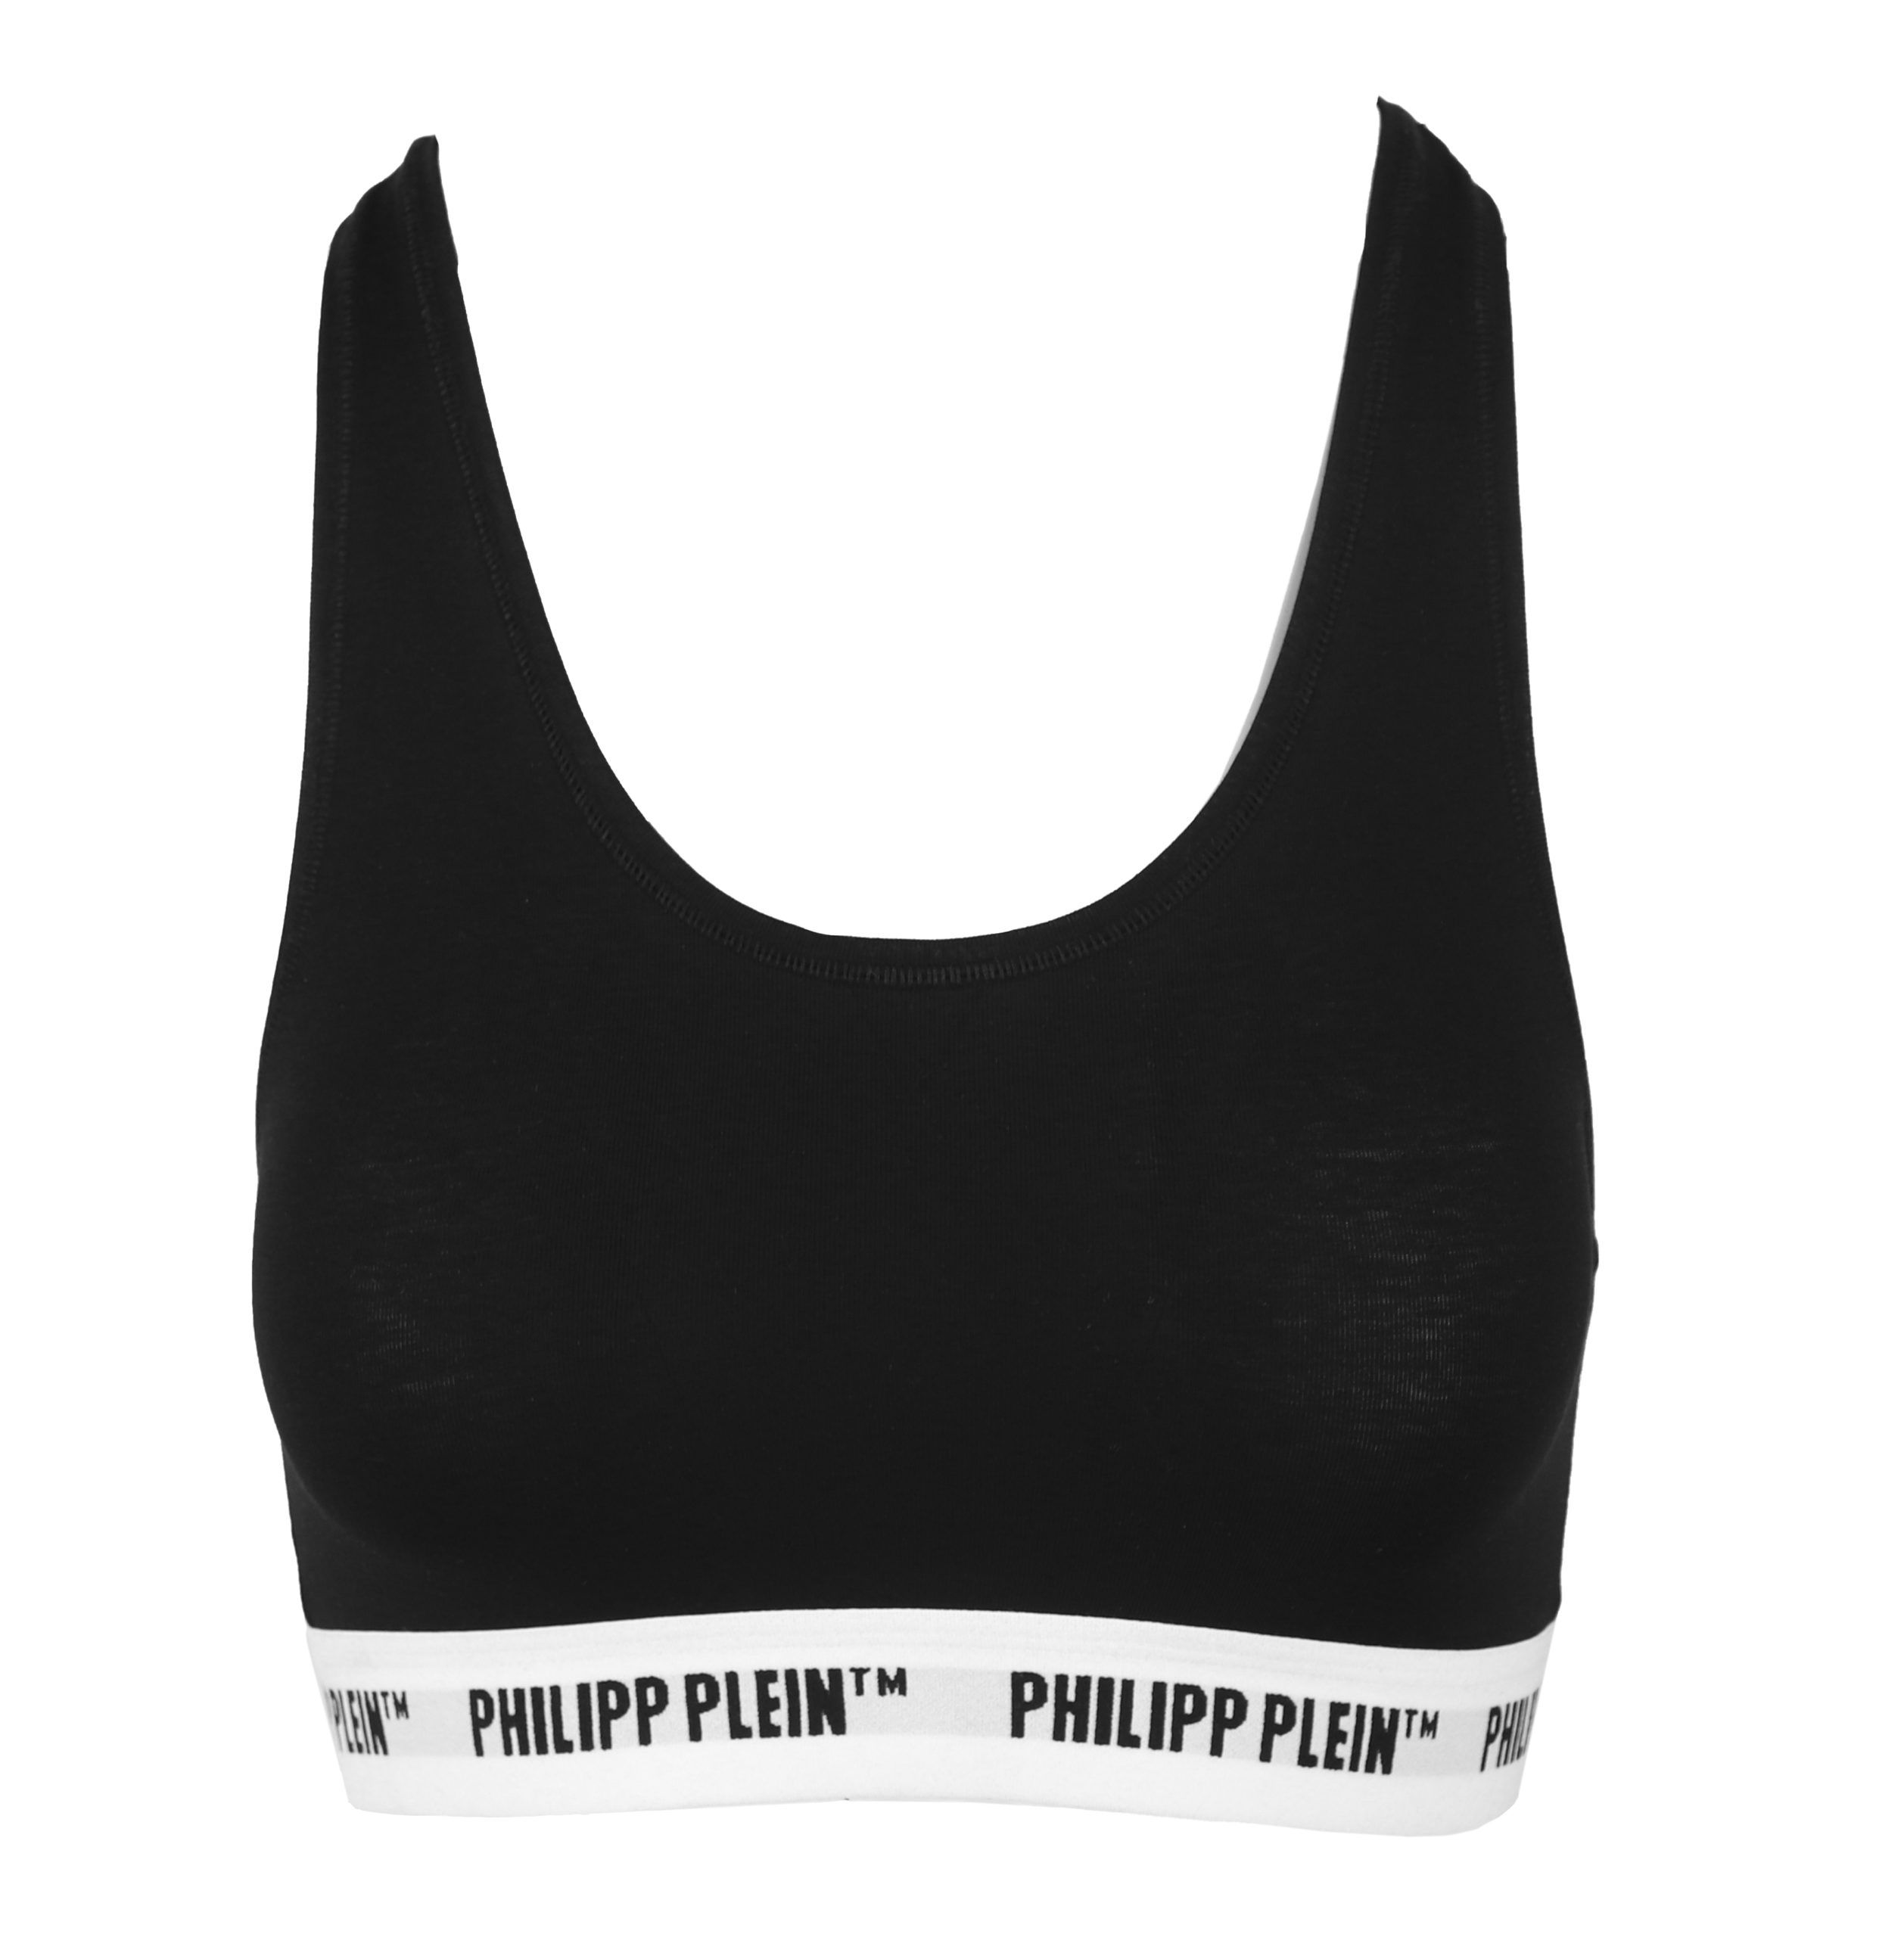 Philipp Plein Black Underwear Sports Bra Two Pack